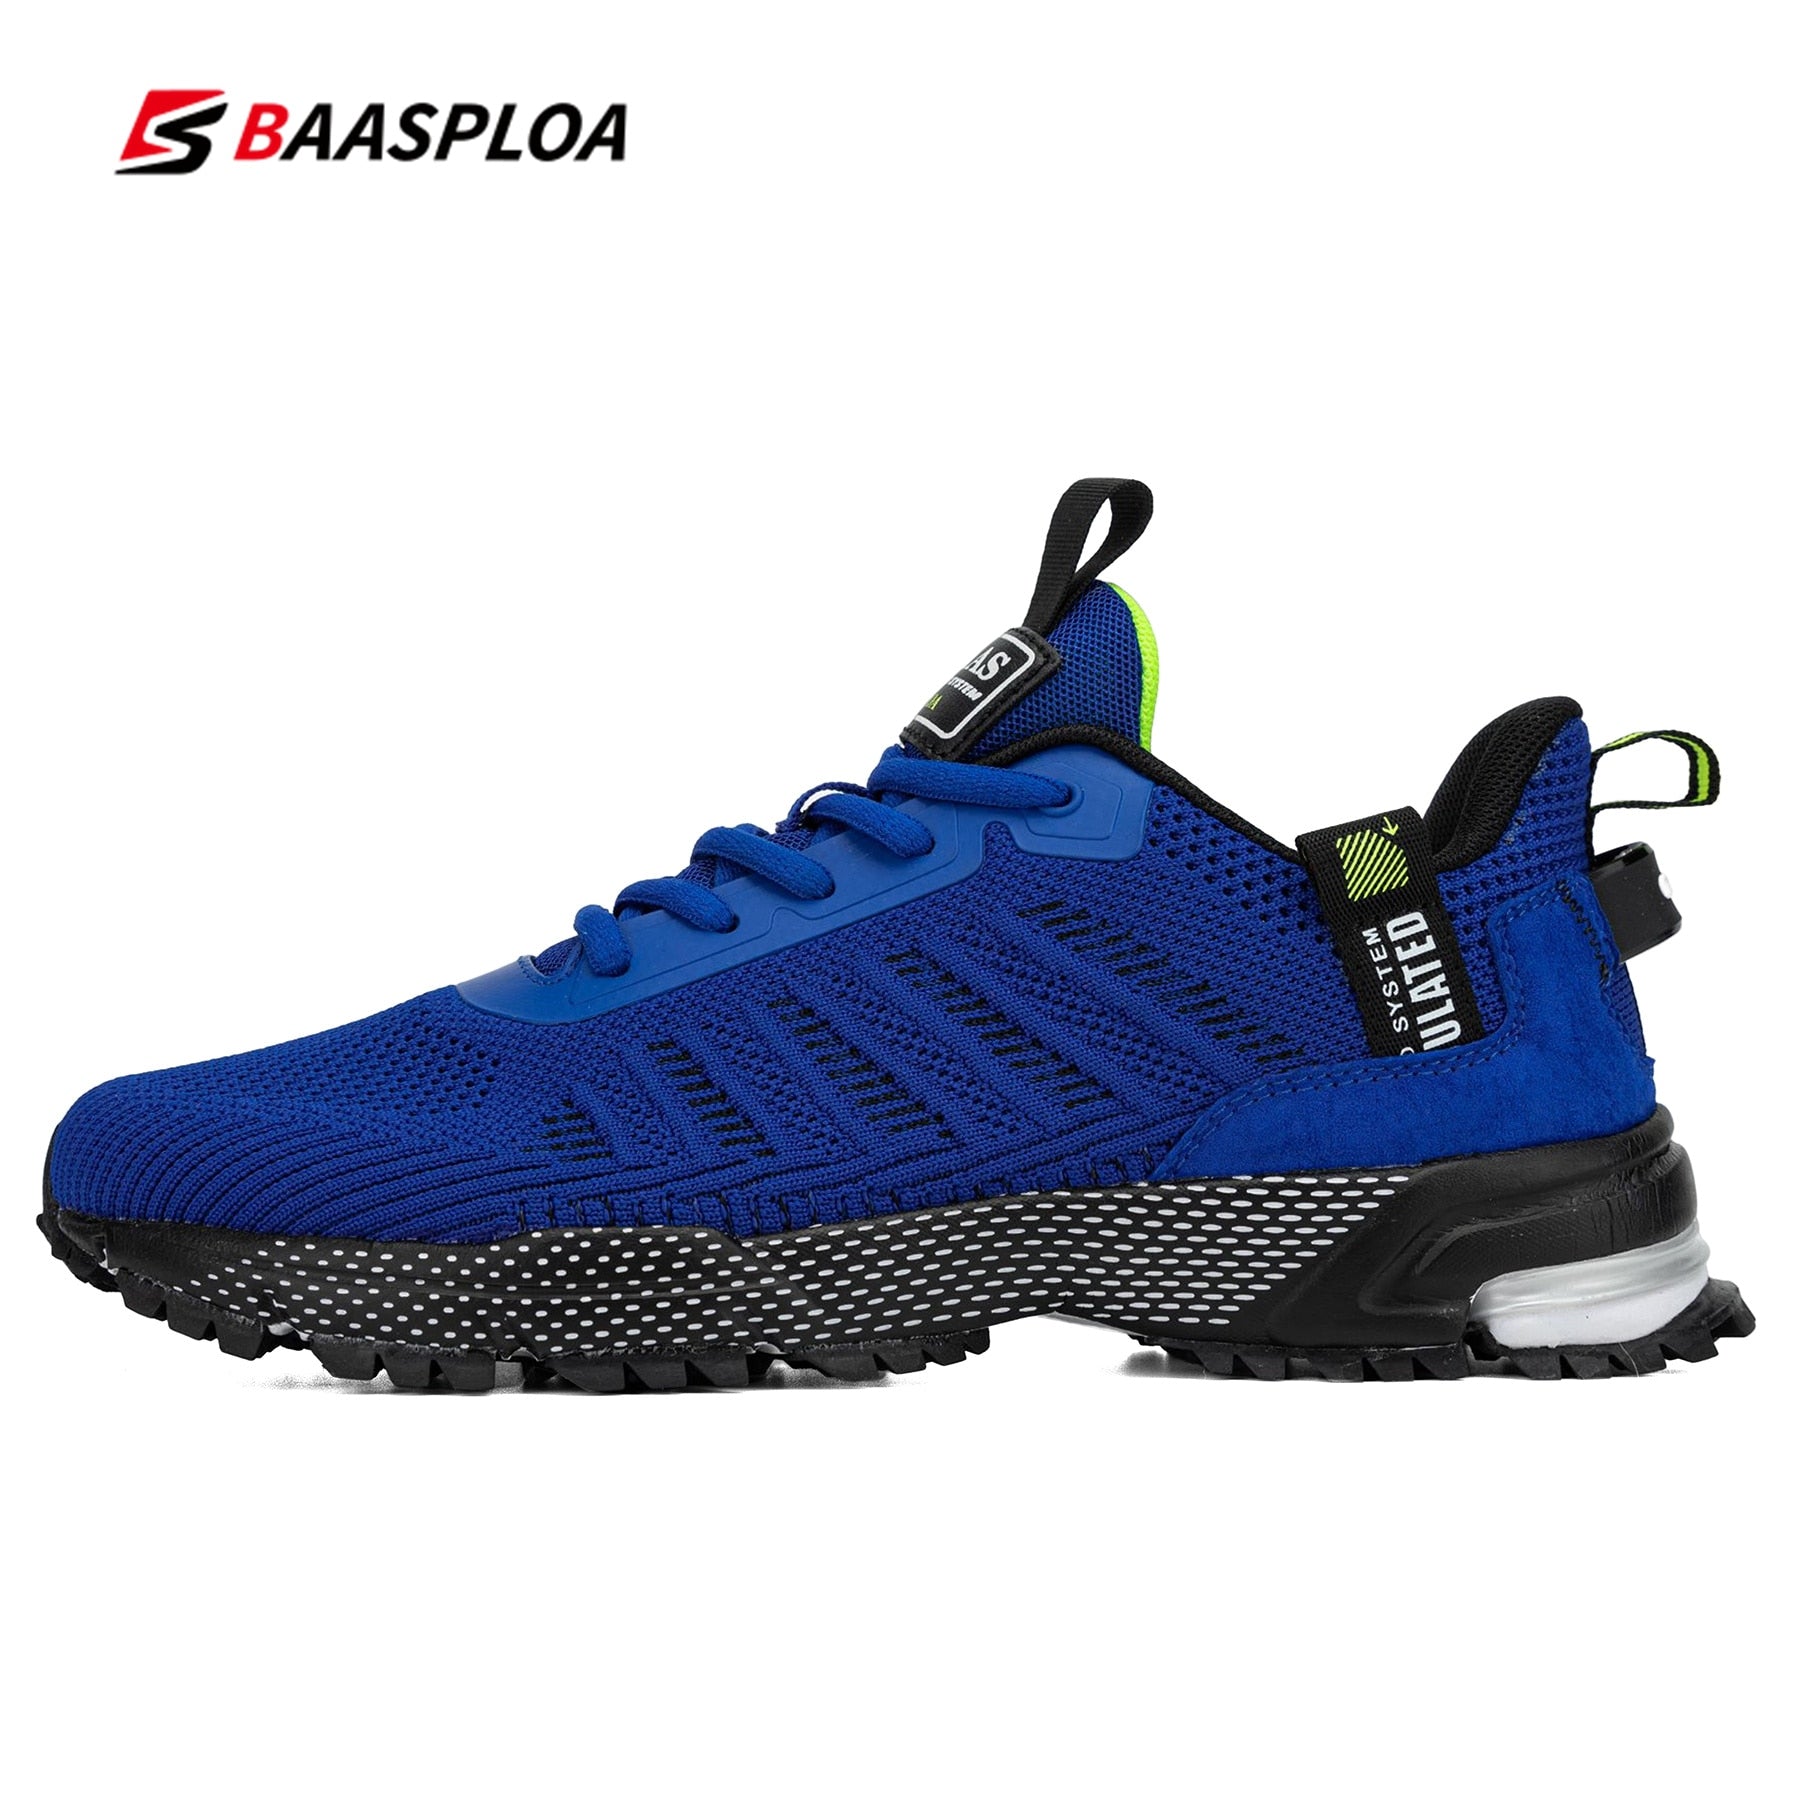 Comprar a01-114101-bl Baasploa Professional Lightweight Running Shoes for Men